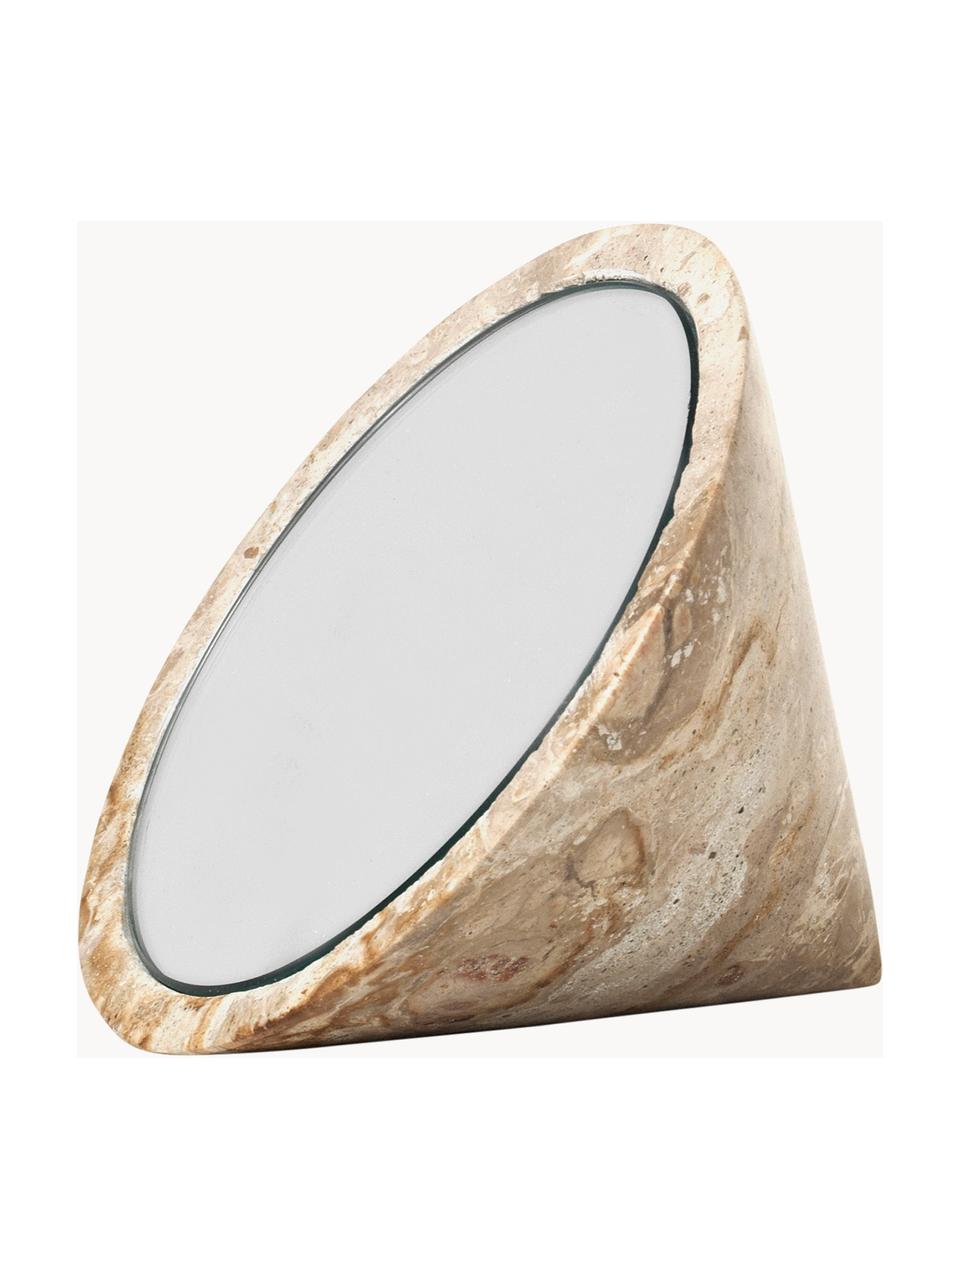 Specchio decorativo in marmo Spinning Top, Lastra di vetro, marmo, Beige marmorizzato, Ø 14 cm